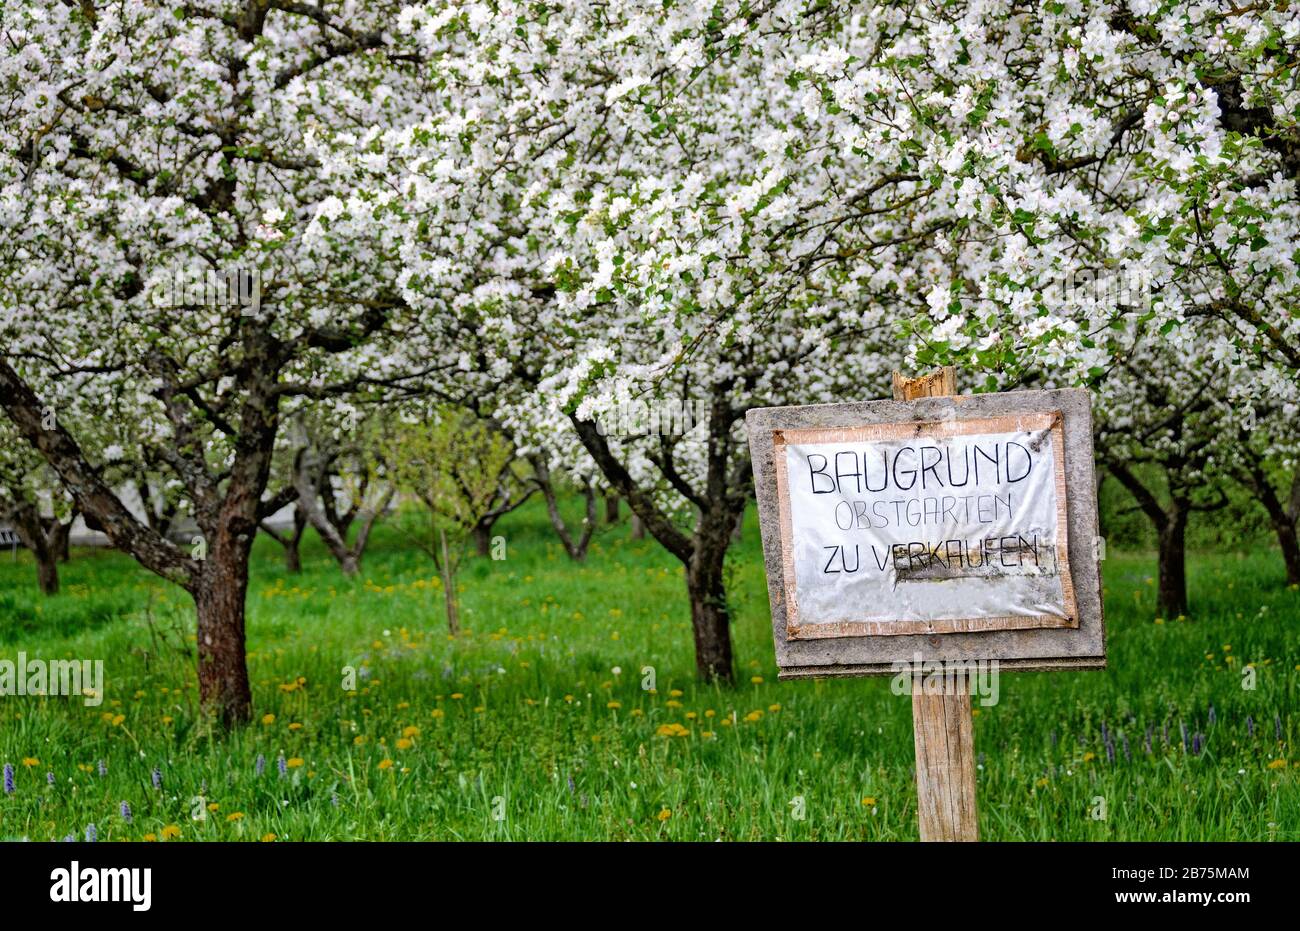 Arbres fruitiers florissants et bouclier avec annonce "construire verger de terrain à vendre", Autriche Banque D'Images